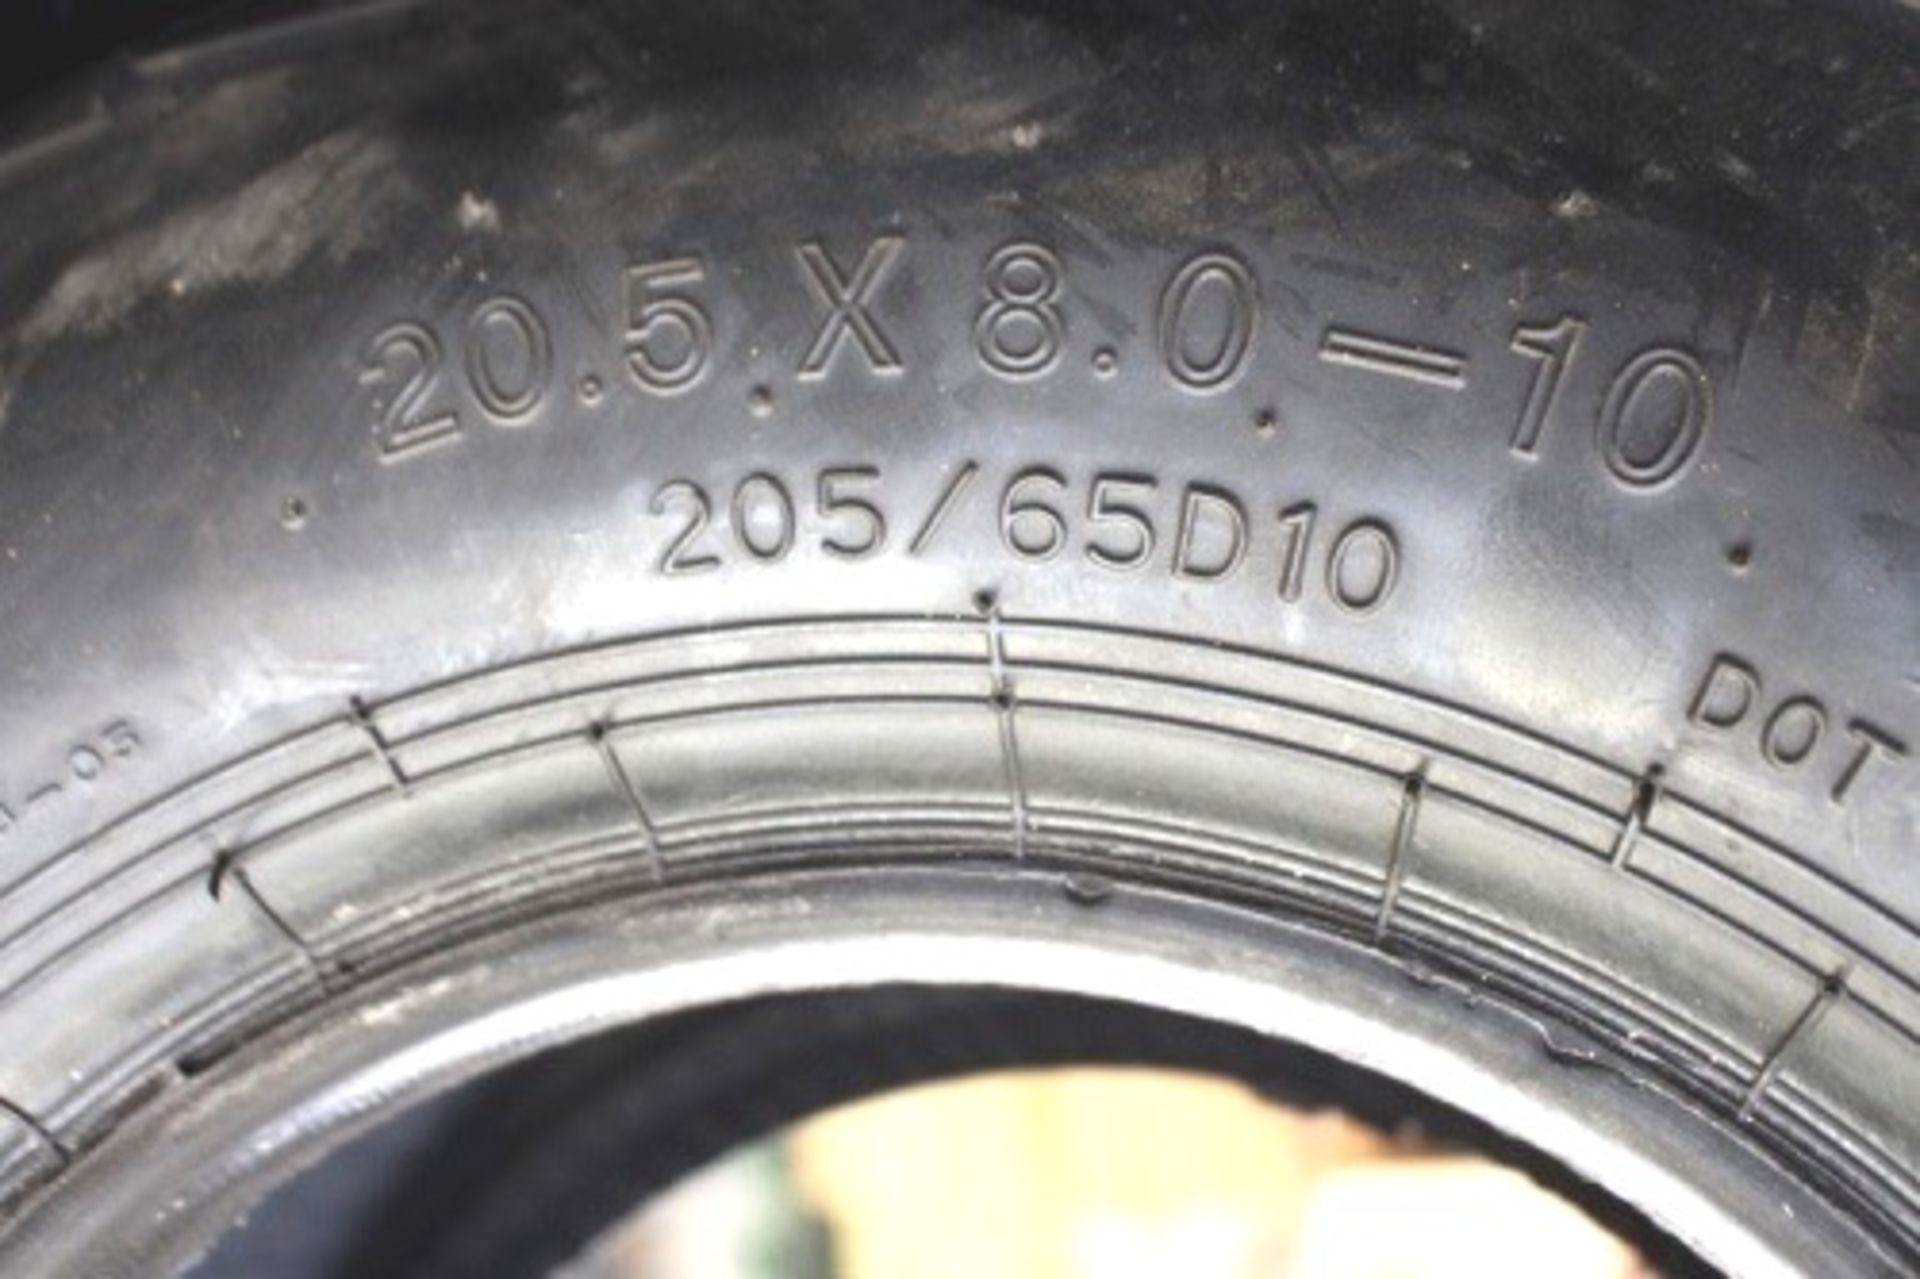 3 x Deli tyres, 2.05x8.0-10 - New (GS10) - Image 2 of 3